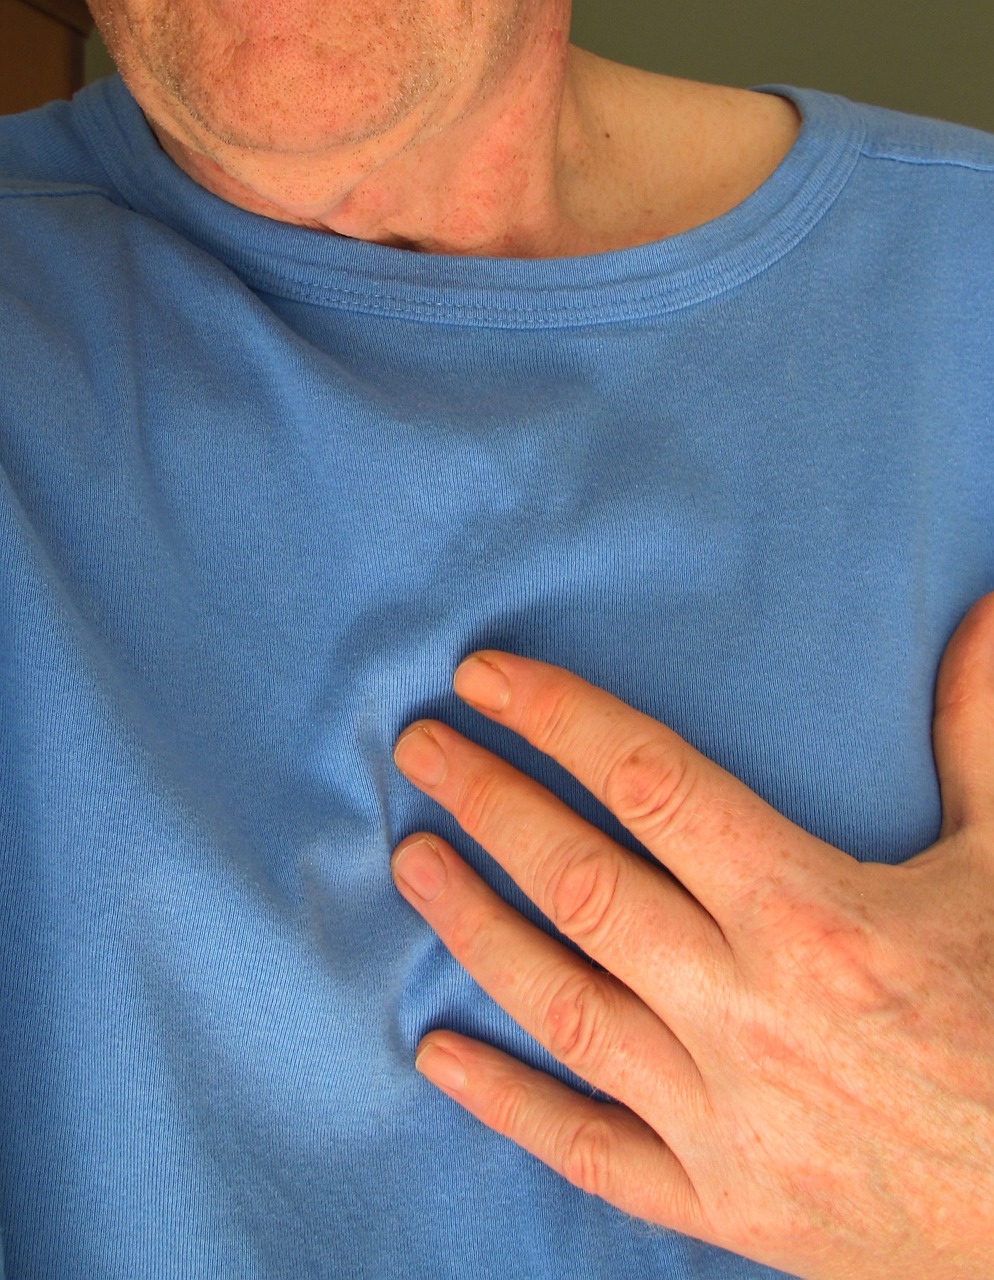 Infarto cardiaco: fattori di rischio e sintomi da conoscere per pervenire il peggio